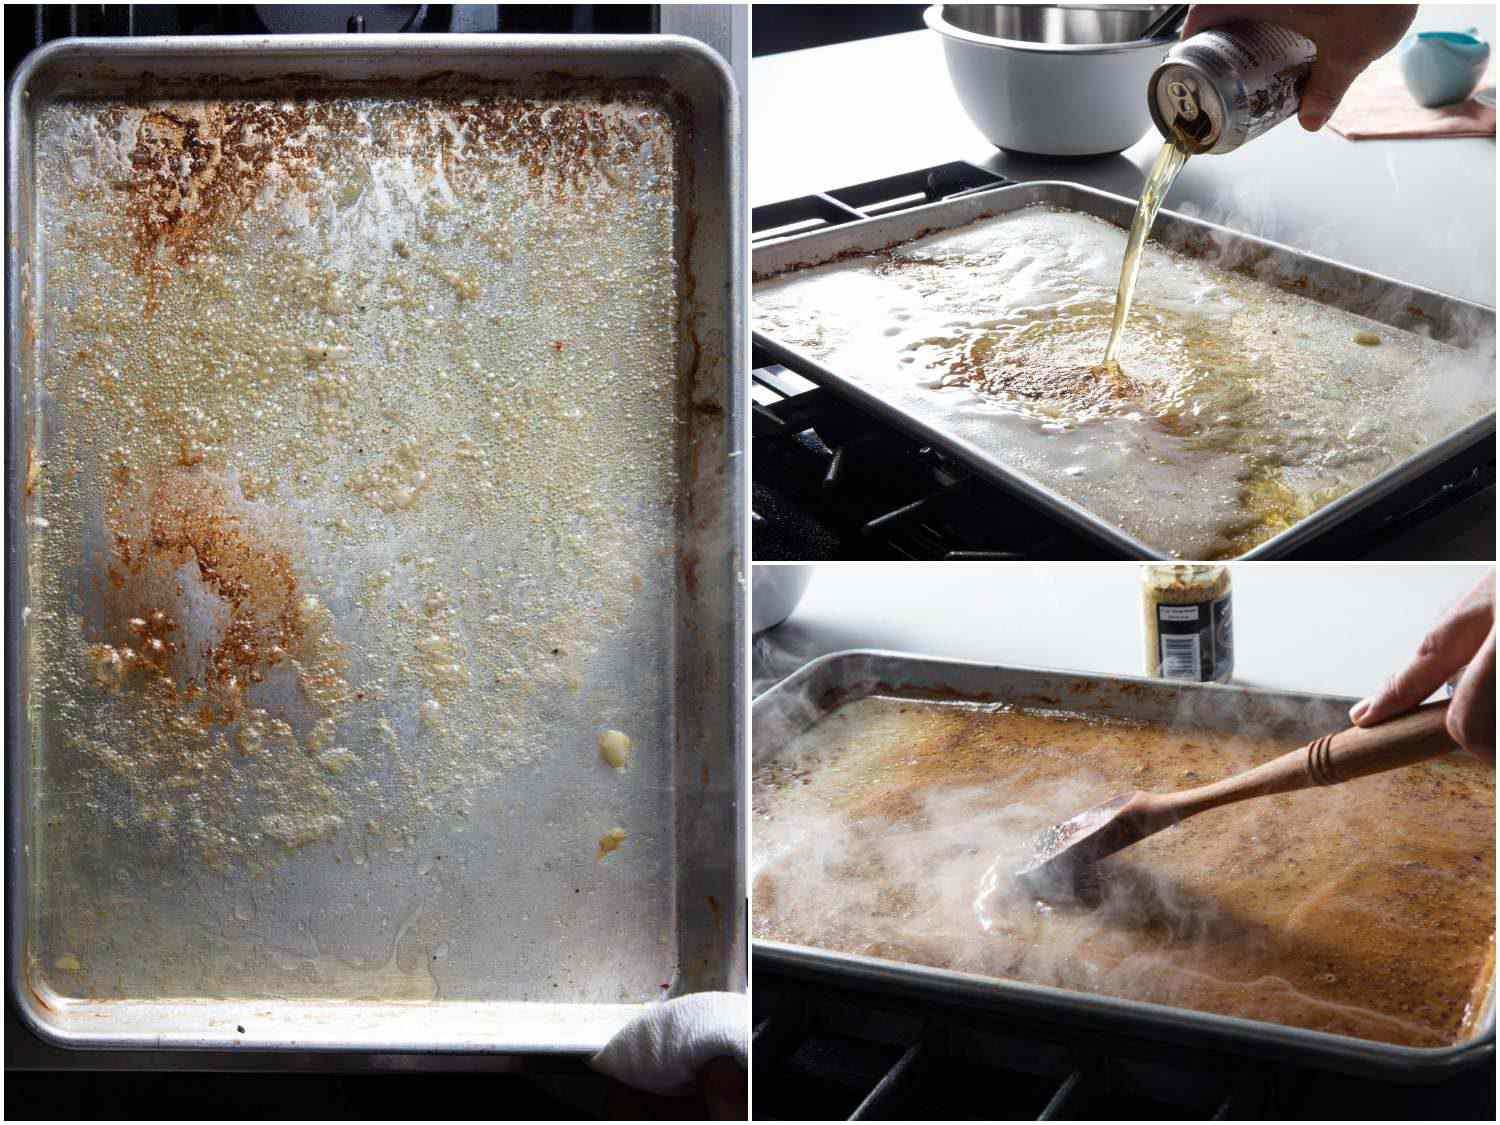 酱汁制作过程图片拼贴:将烤盘上剩余的汁液煎成褐色，然后用啤酒去釉，最后加入芥末搅拌